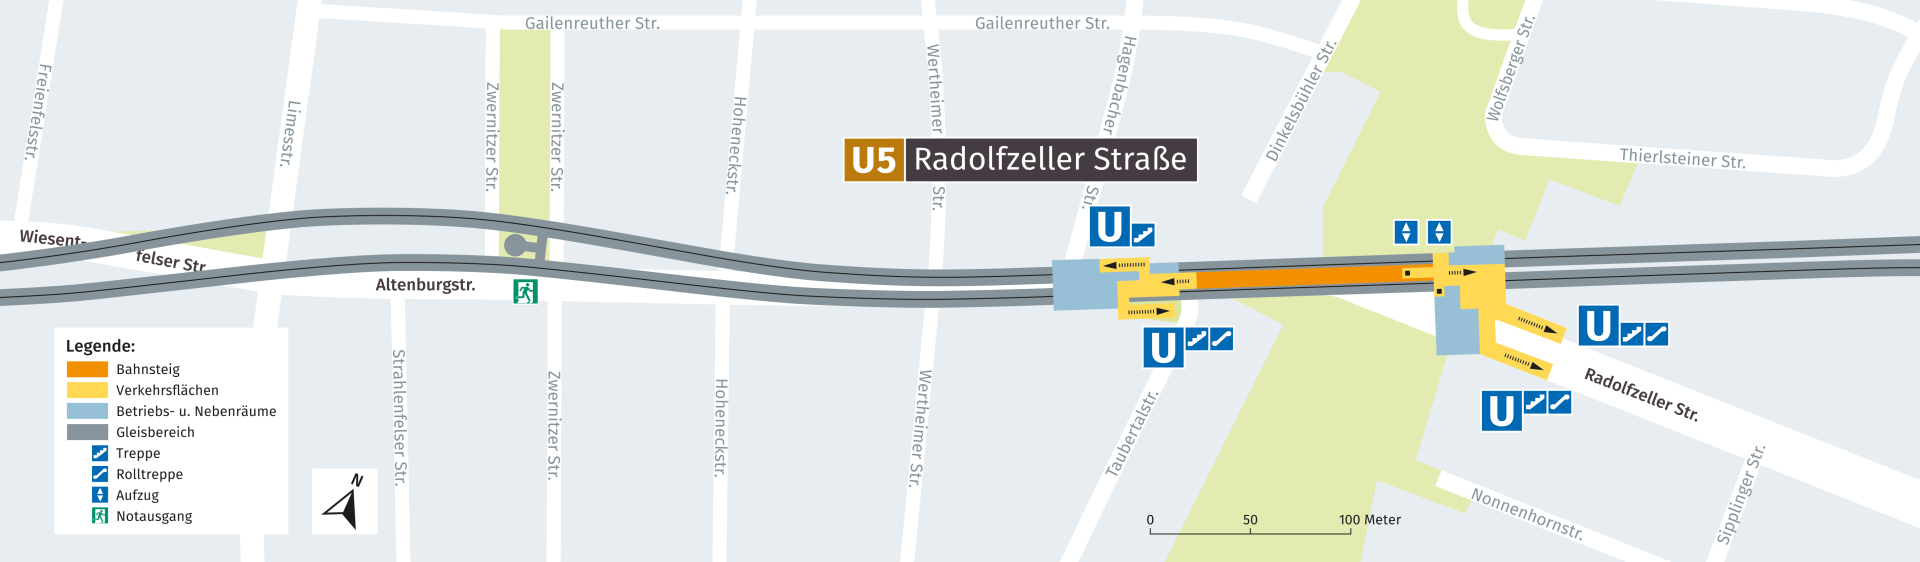 U-Bahnhof Radolfzeller Straße, Lageplan: Baureferat